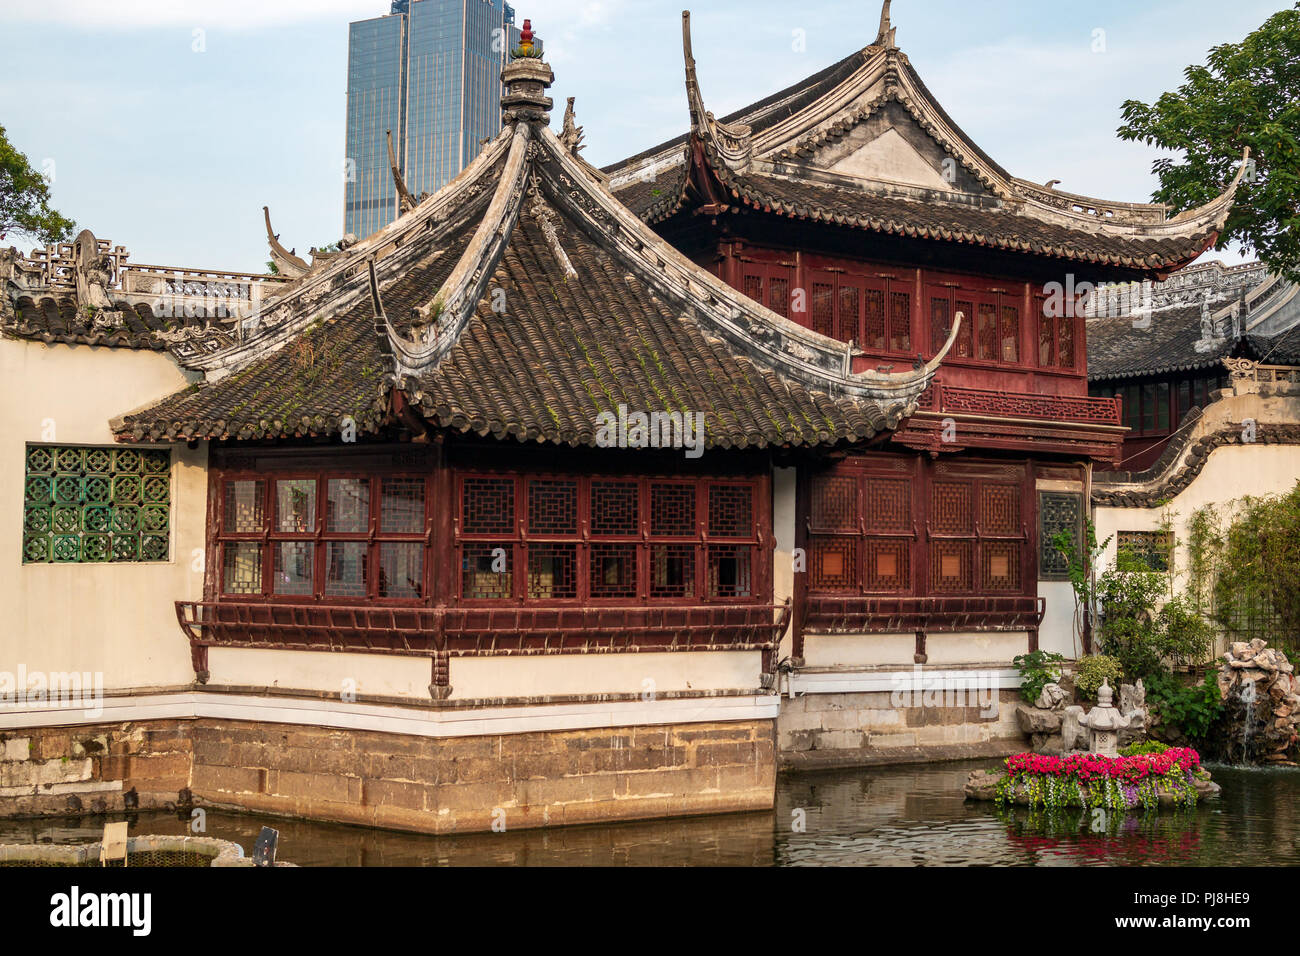 Popolare famosa località turistica di Il Giardino di Yuyuan vecchia Shanghai, Cina Foto Stock